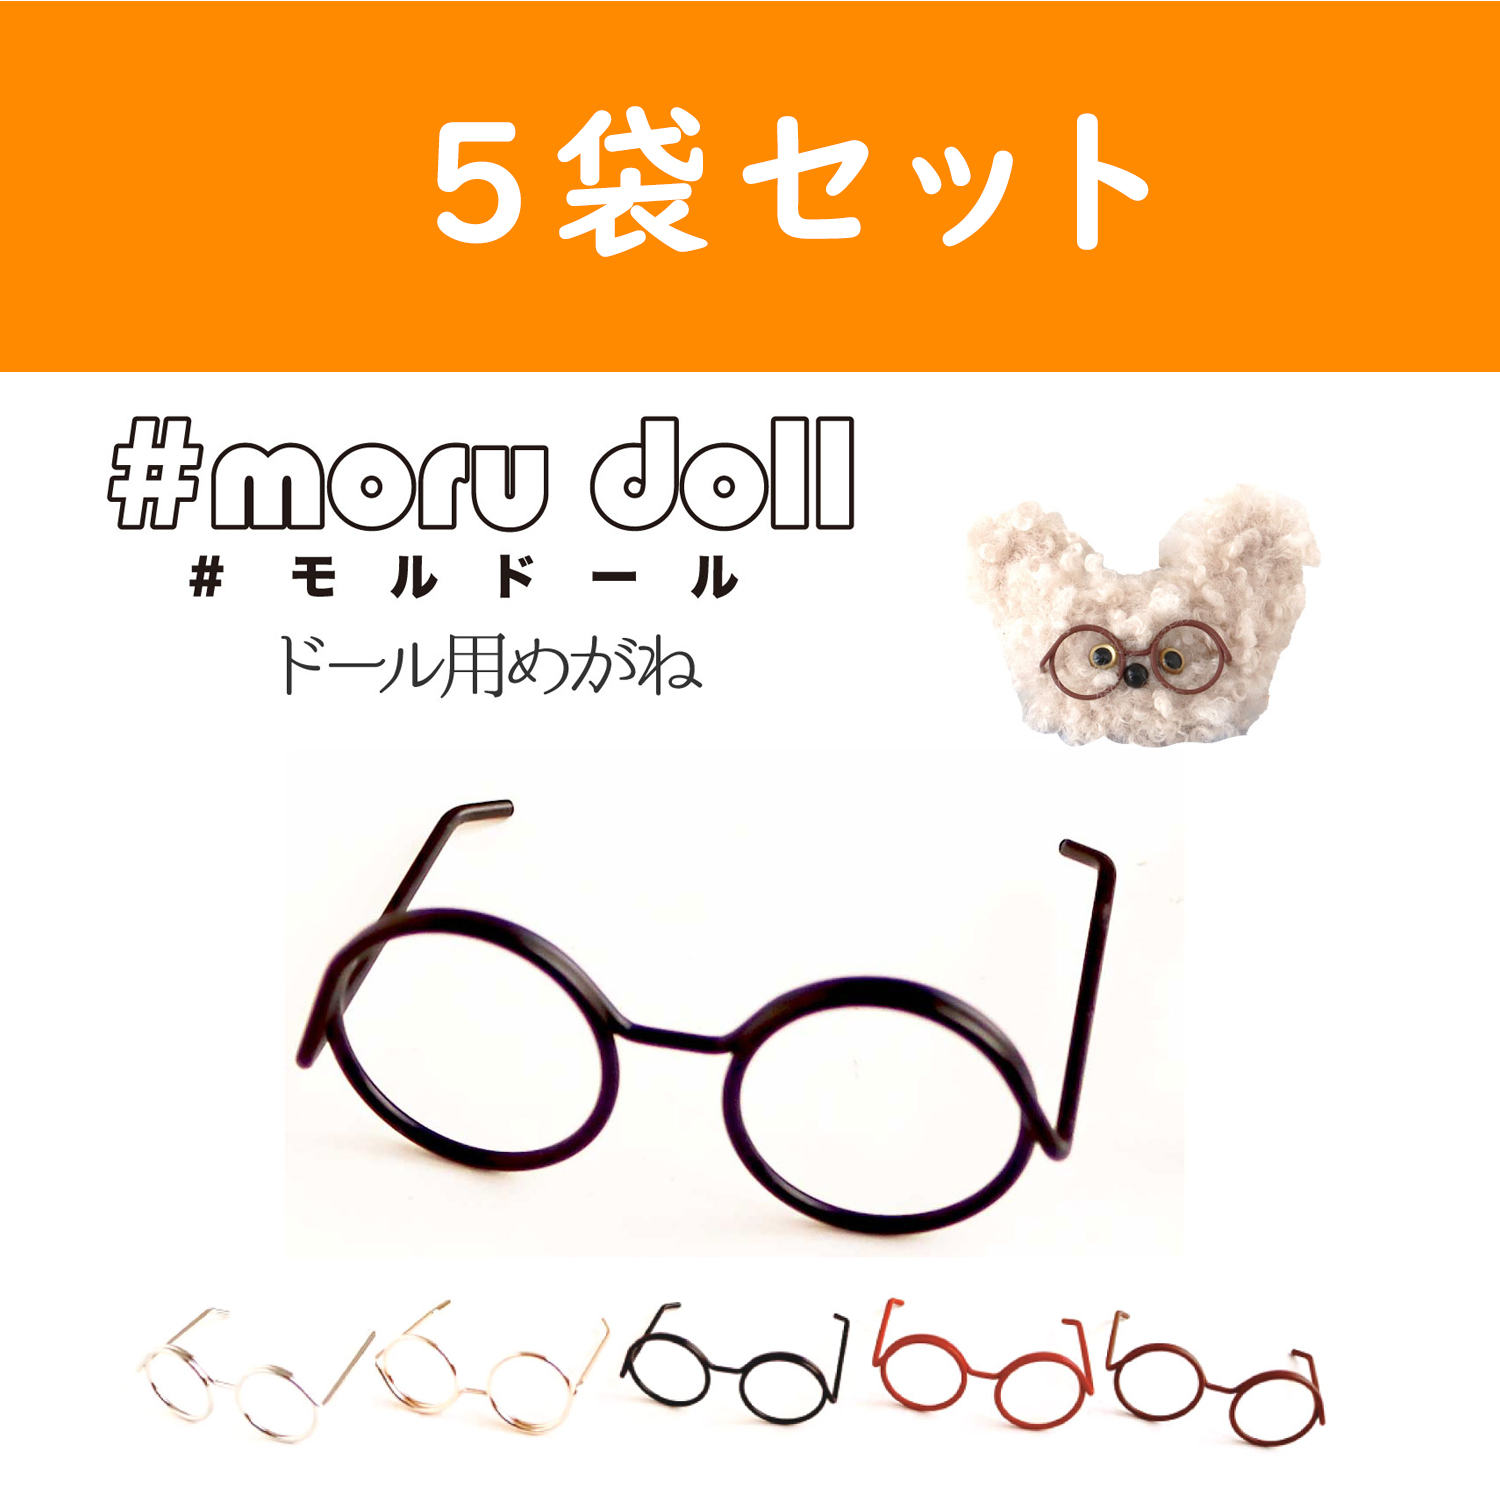 MOL-5 Molle doll Korean miscellaneous goods Glasses parts 1 piece×5 pack set (Set)